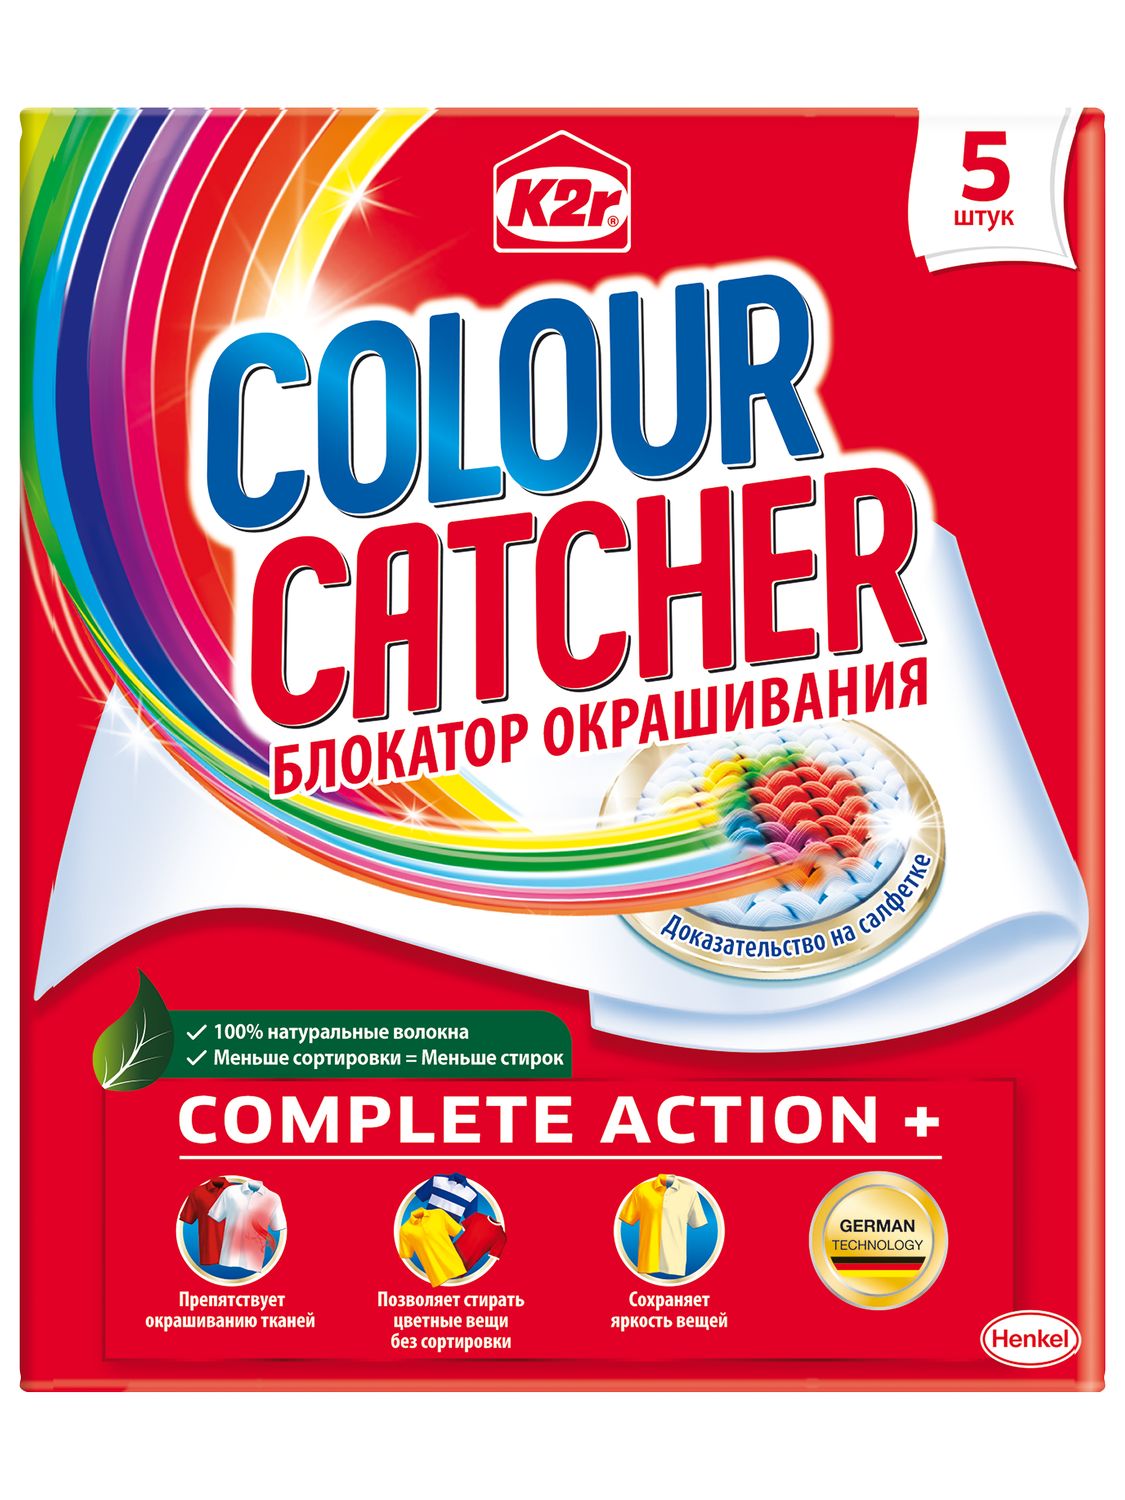 Салфетки для стирки K2r Colour Catcher цветопоглощение, 5 шт. - фото 2